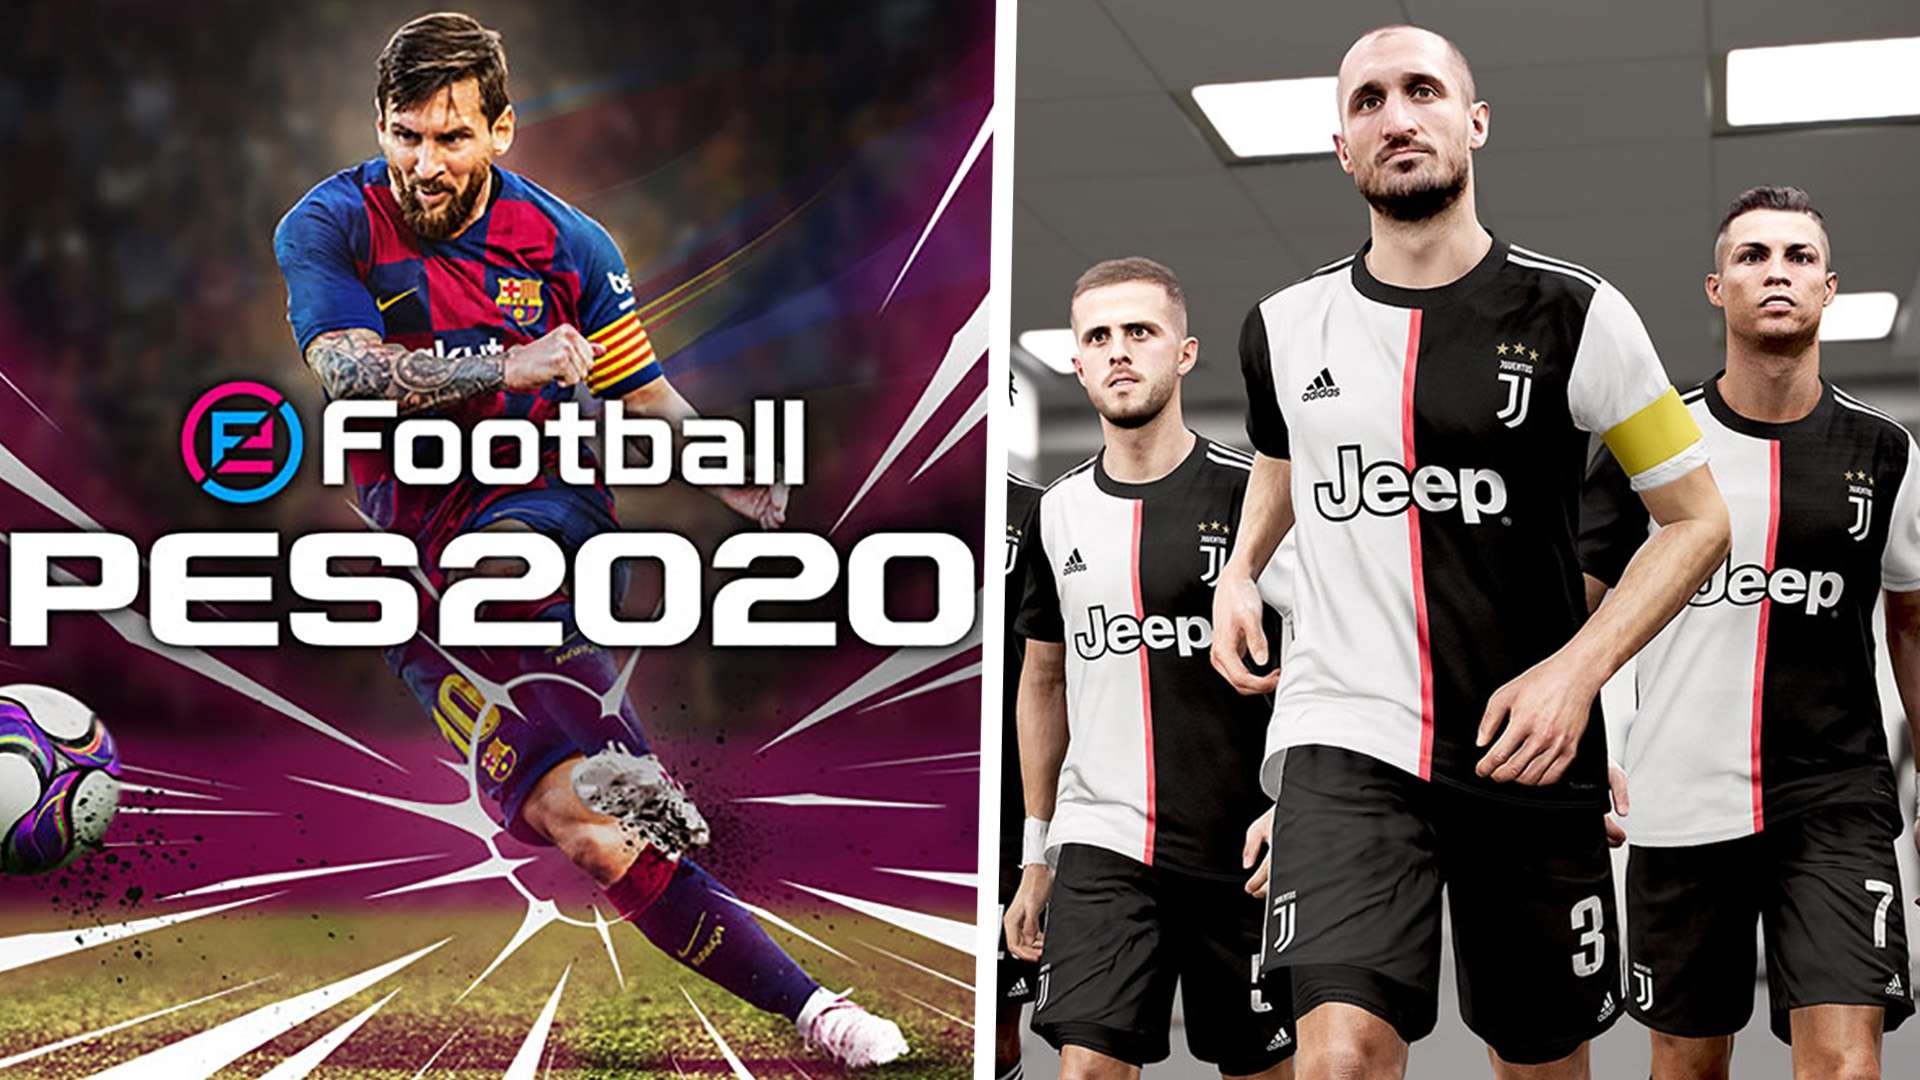 eFootball PES 2020 split